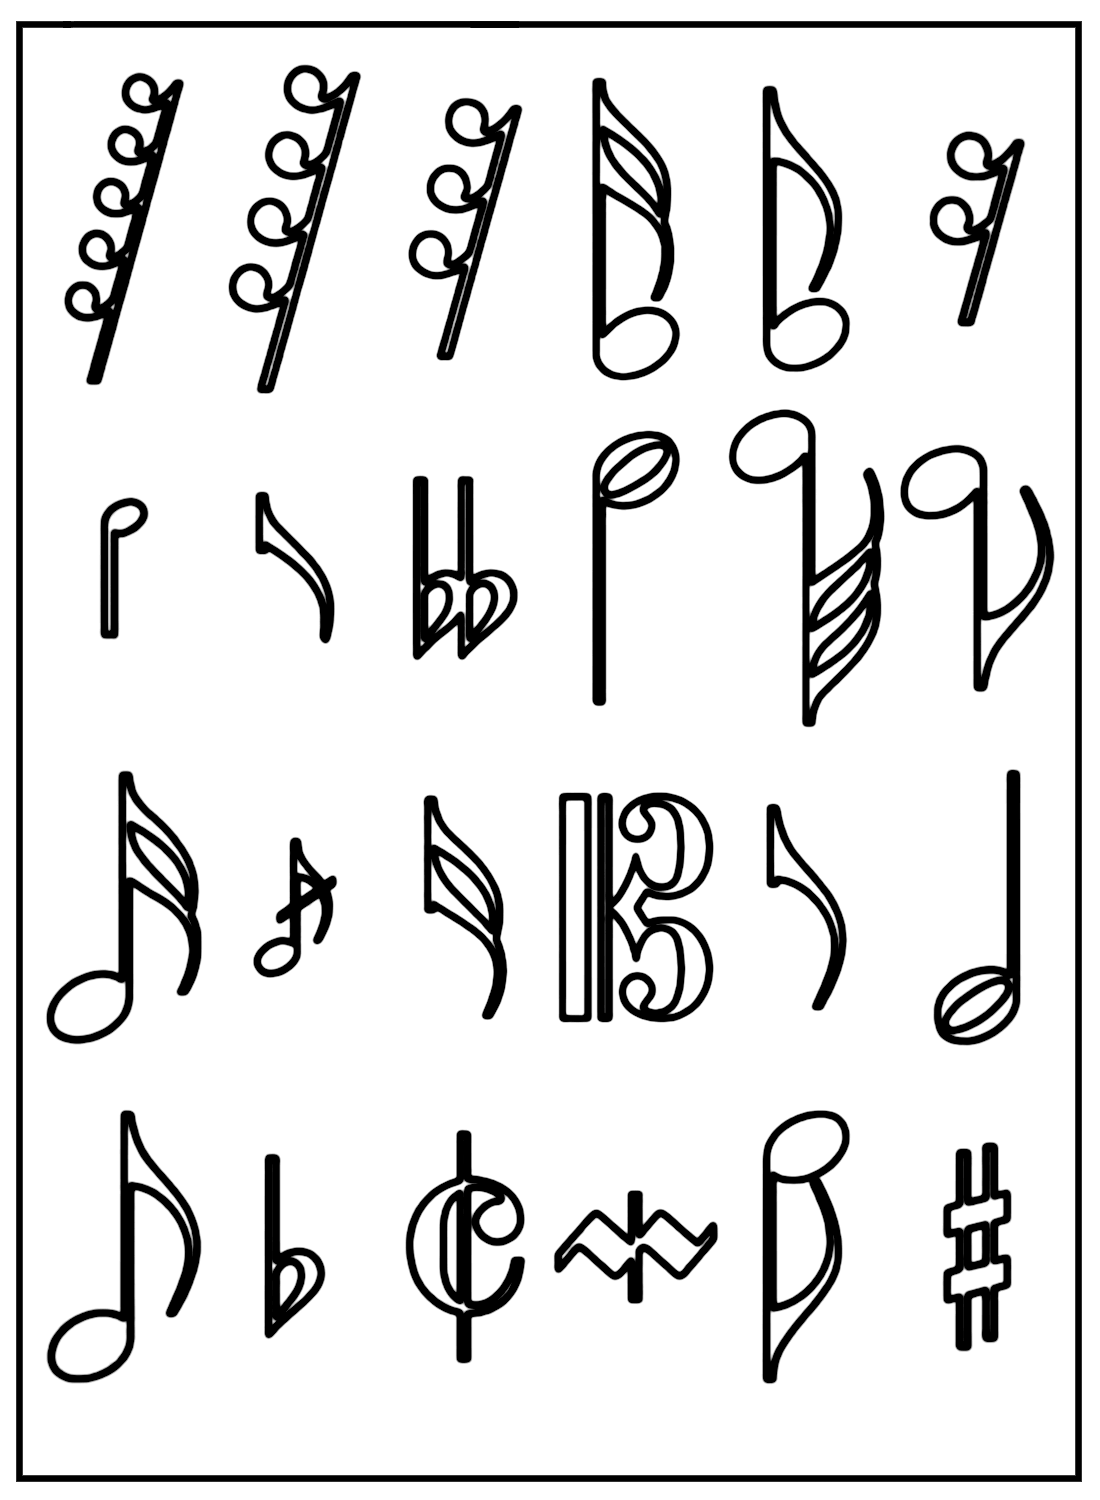 音乐笔记中的音符符号